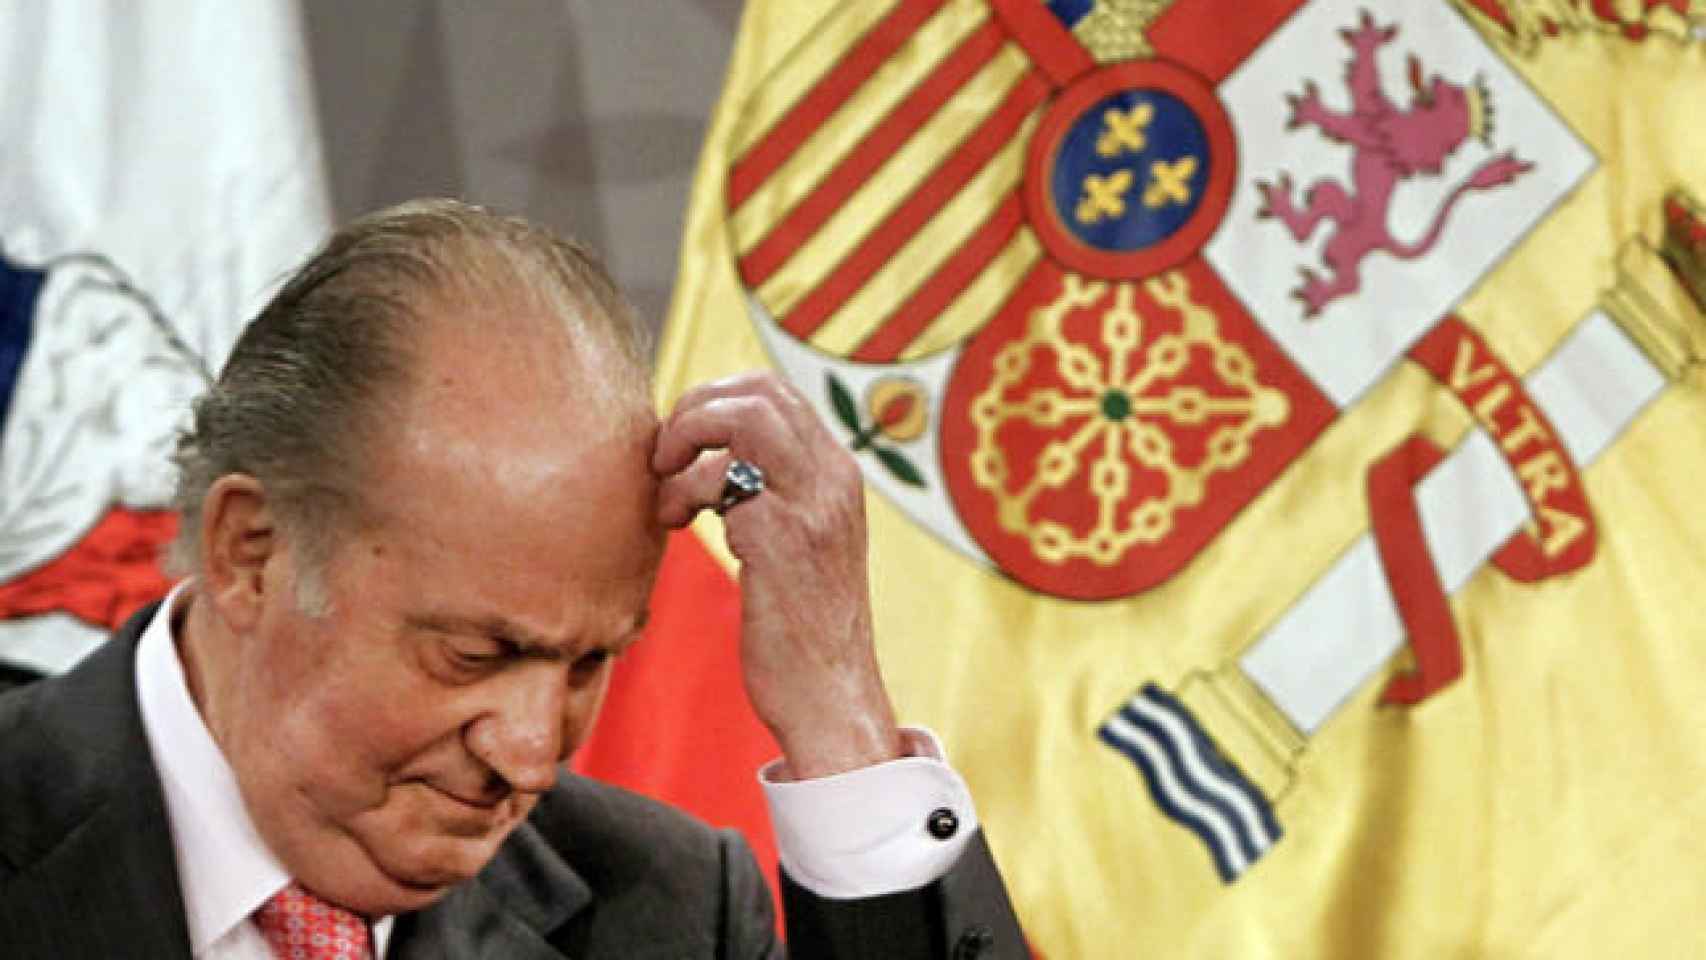 El Rey Juan Carlos I cumple 80 años sintiendo que ha sido obligado a vivir un exilio forzado.